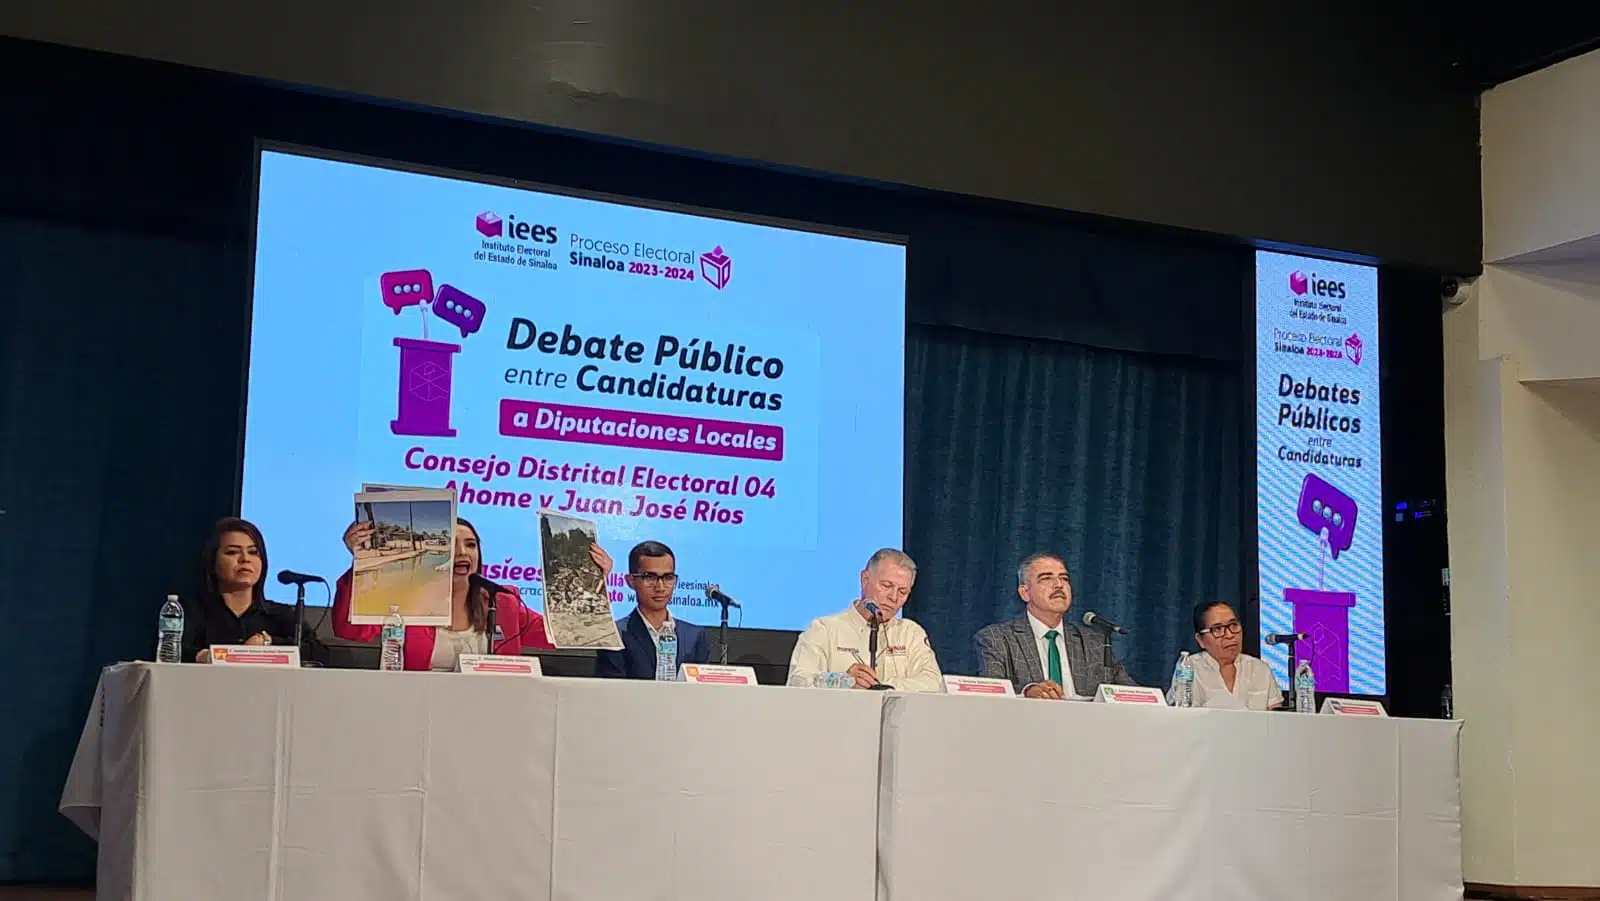 Debate público entre diputados locales por el distrito electoral 04 Ahome y Juan José Ríos